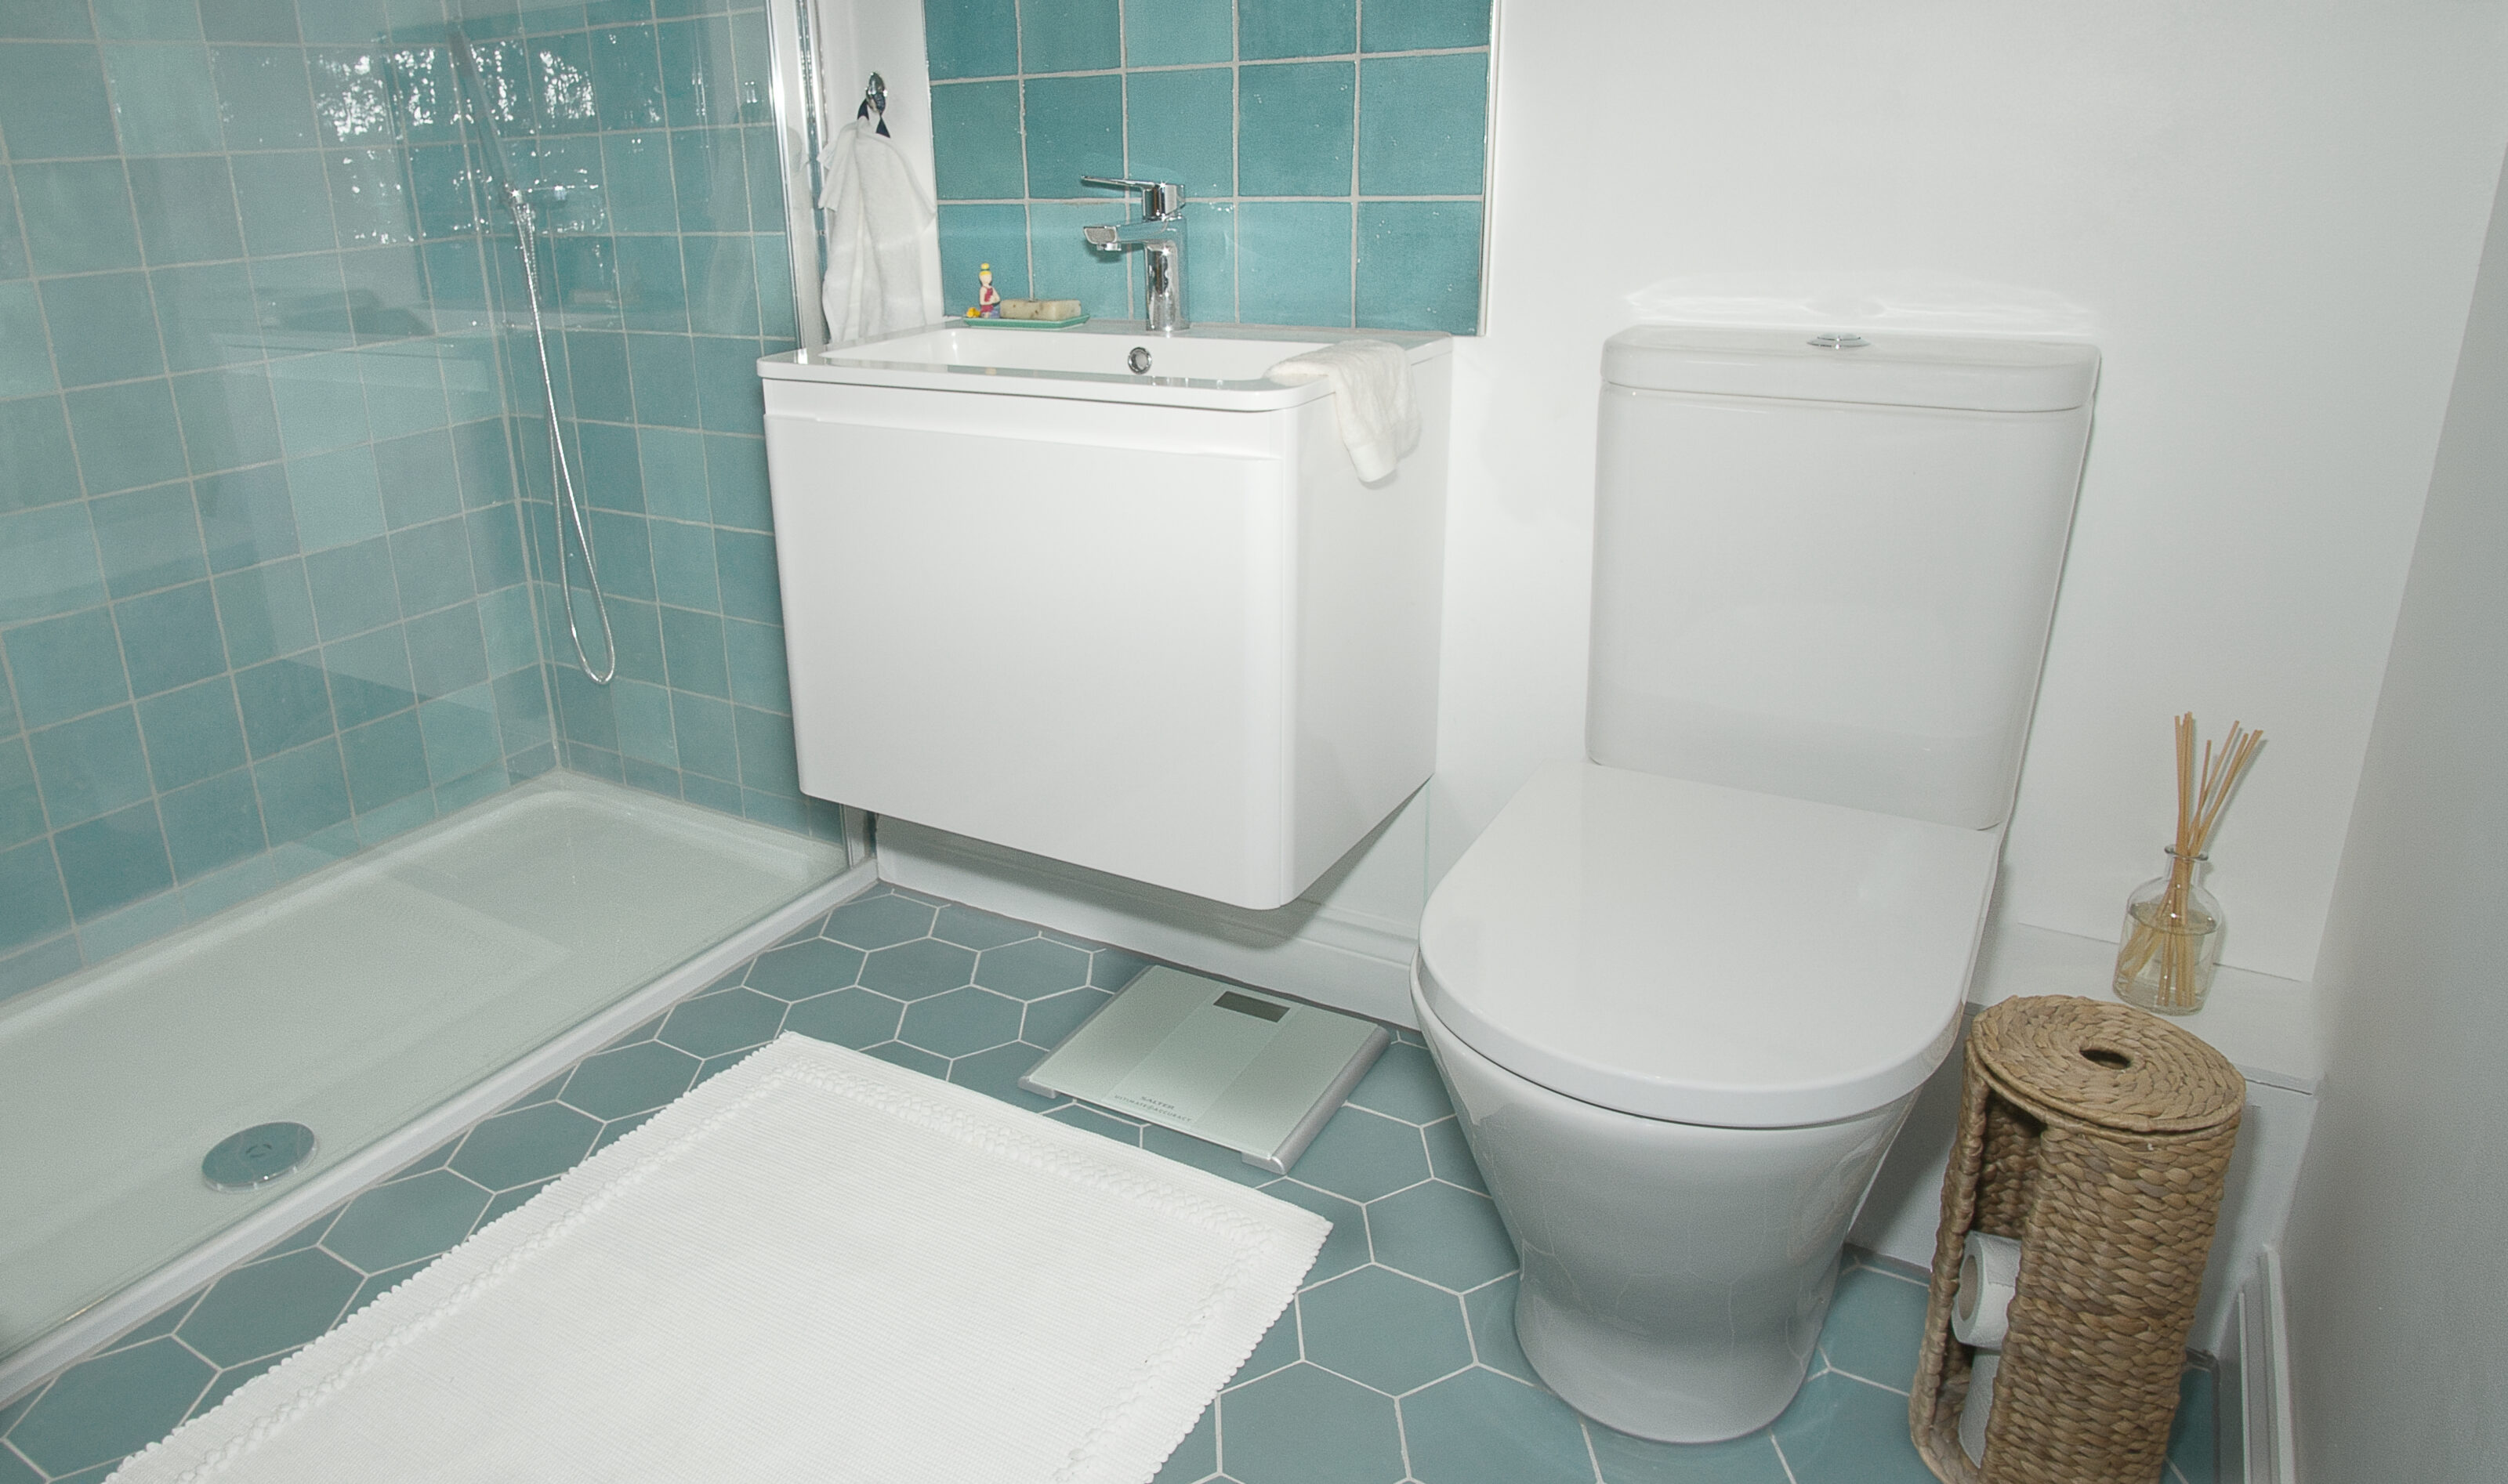 Aqua Hexagon Bathroom new image tiles weymouth